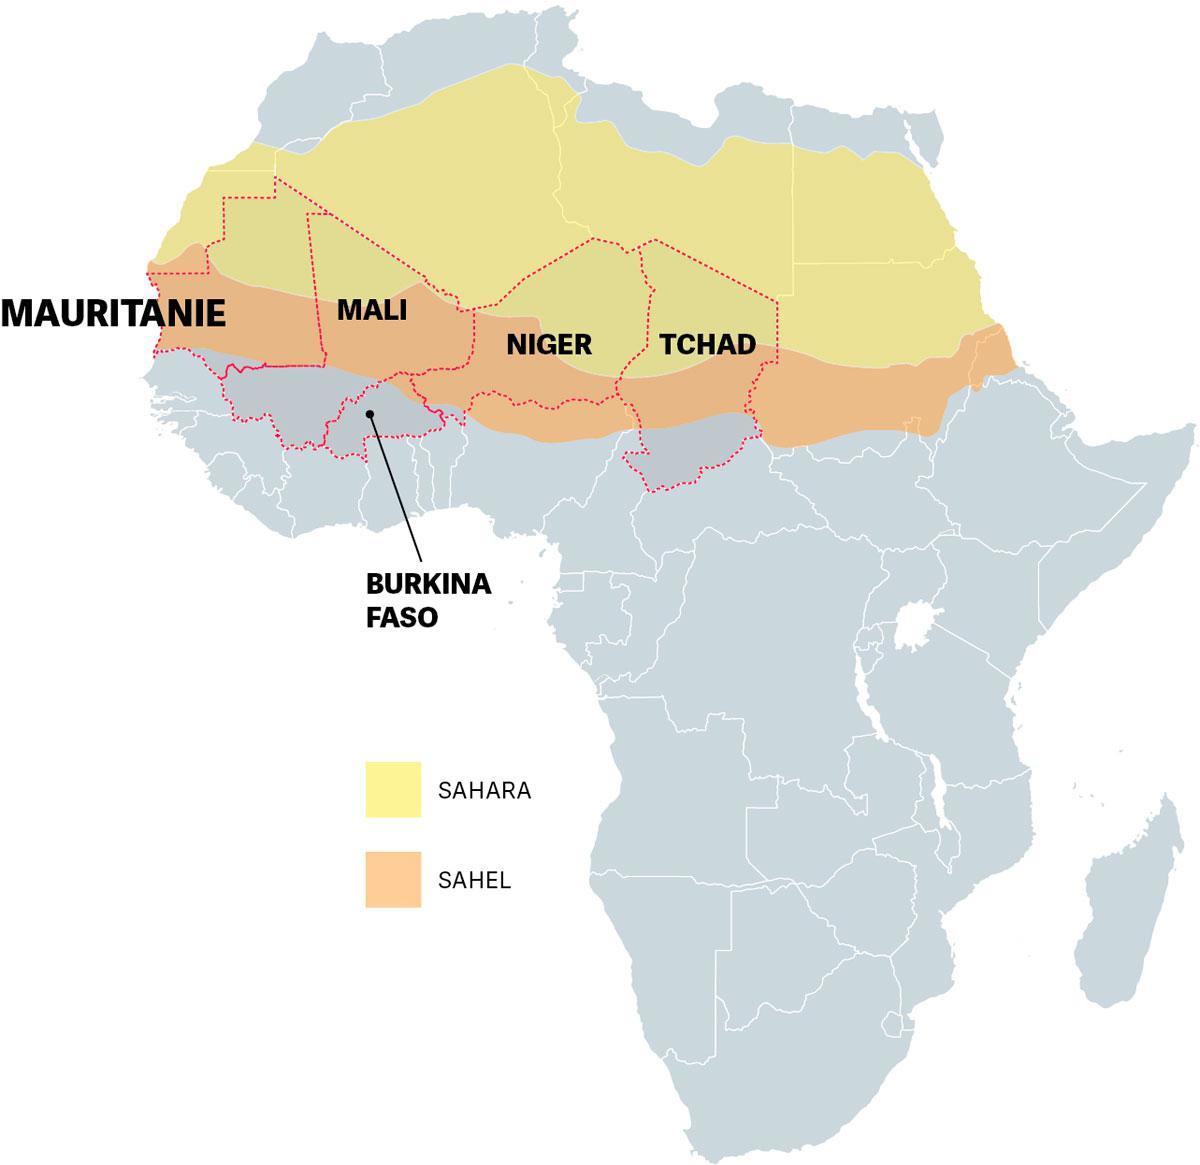 Pour le Réseau G5 Sahel, esclavage et djihadisme sont intimement liés.